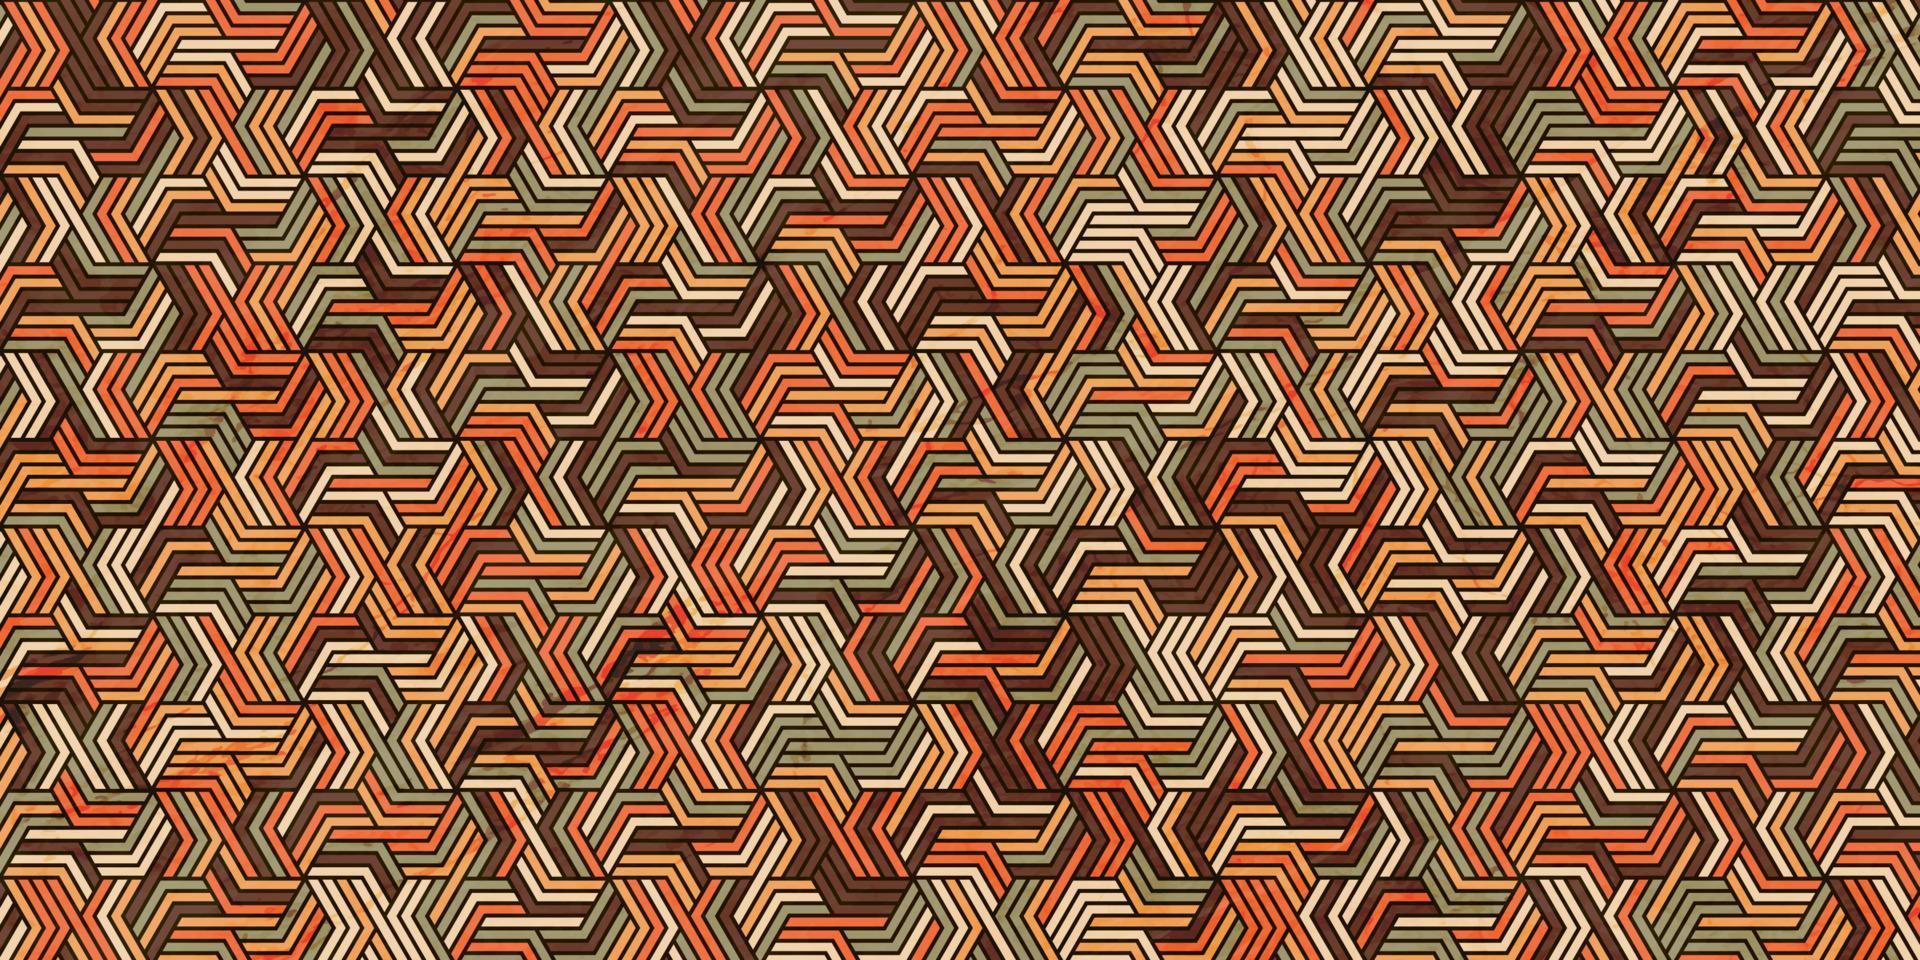 padrão geométrico com listras onduladas de fundo laranja vetor